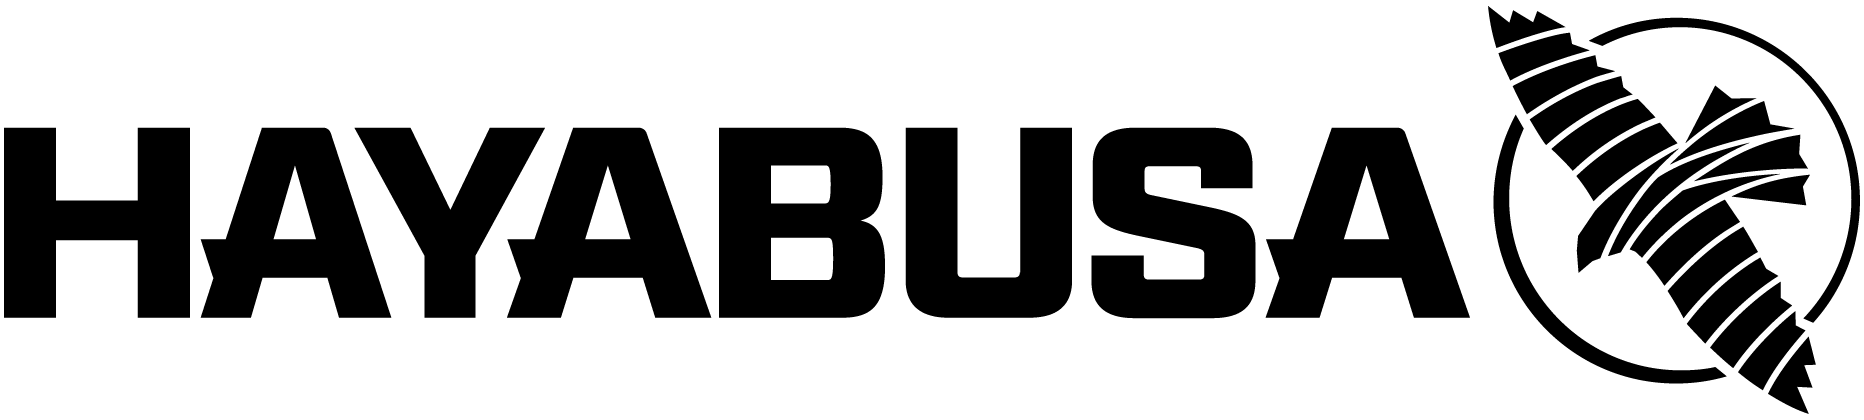 hayabusa logo png